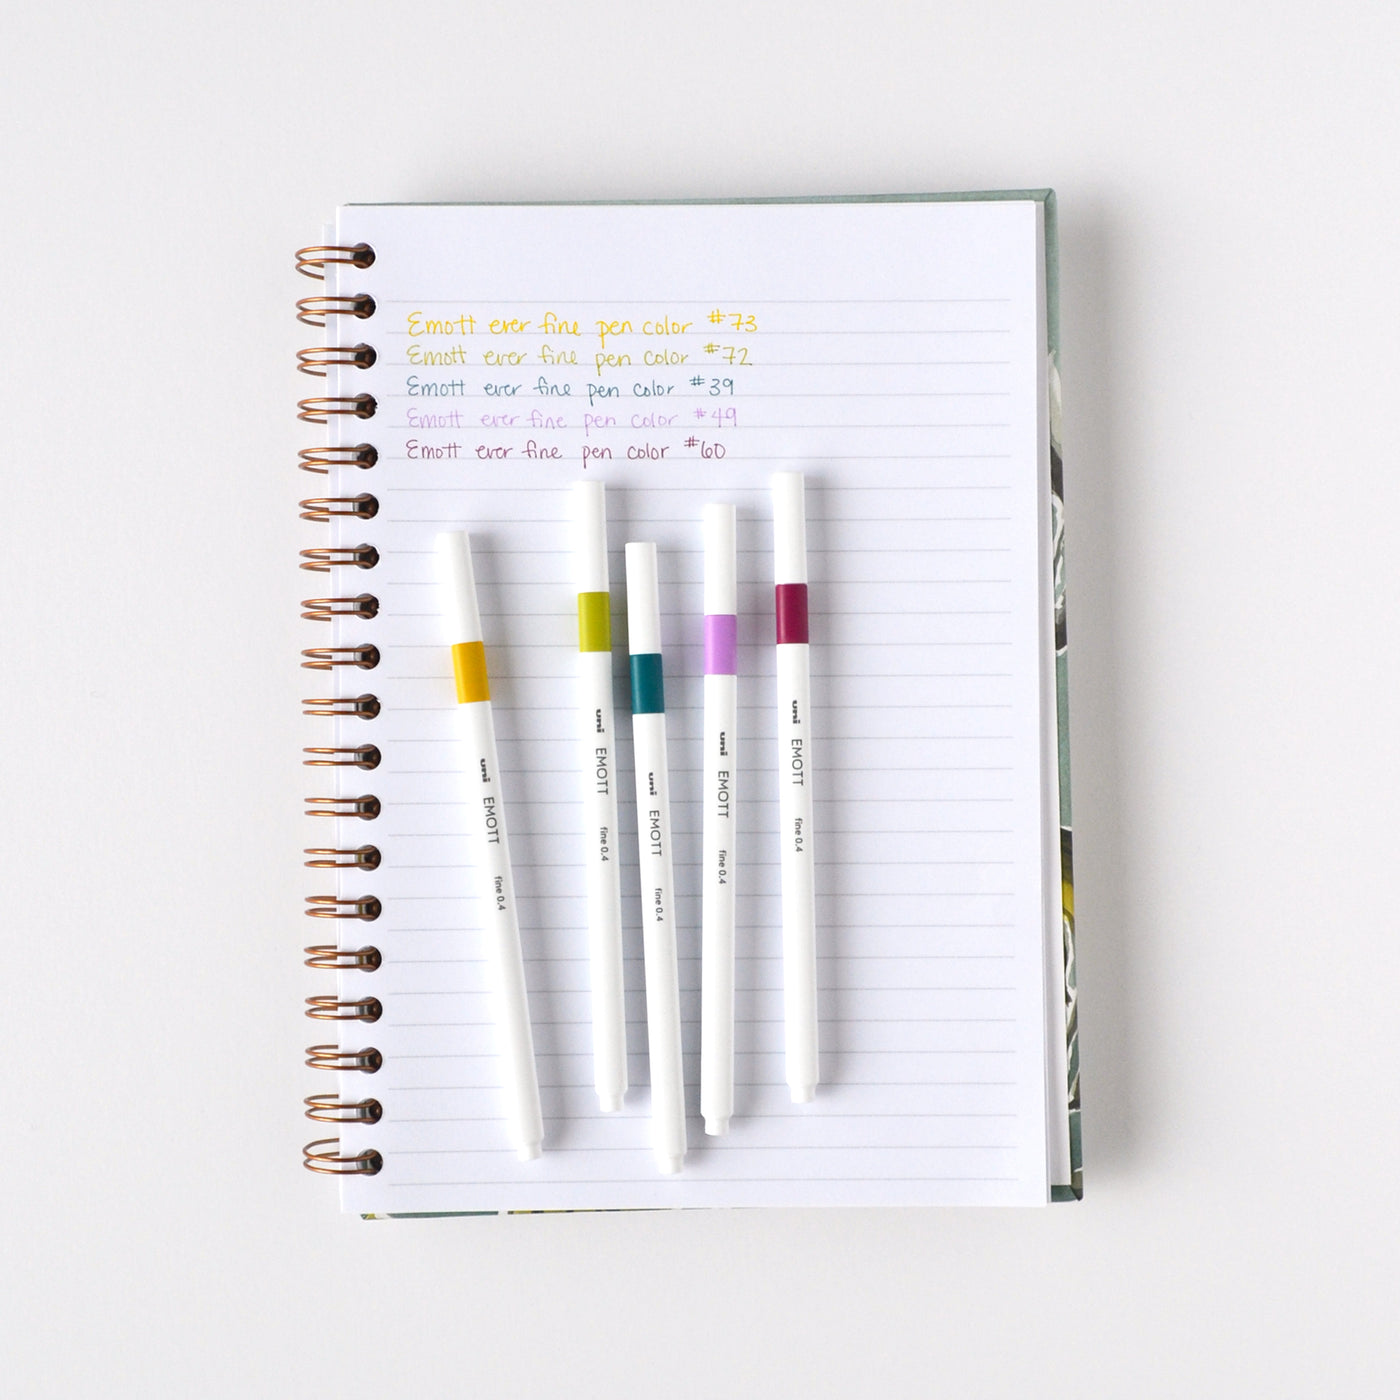 Retro colored marker pens